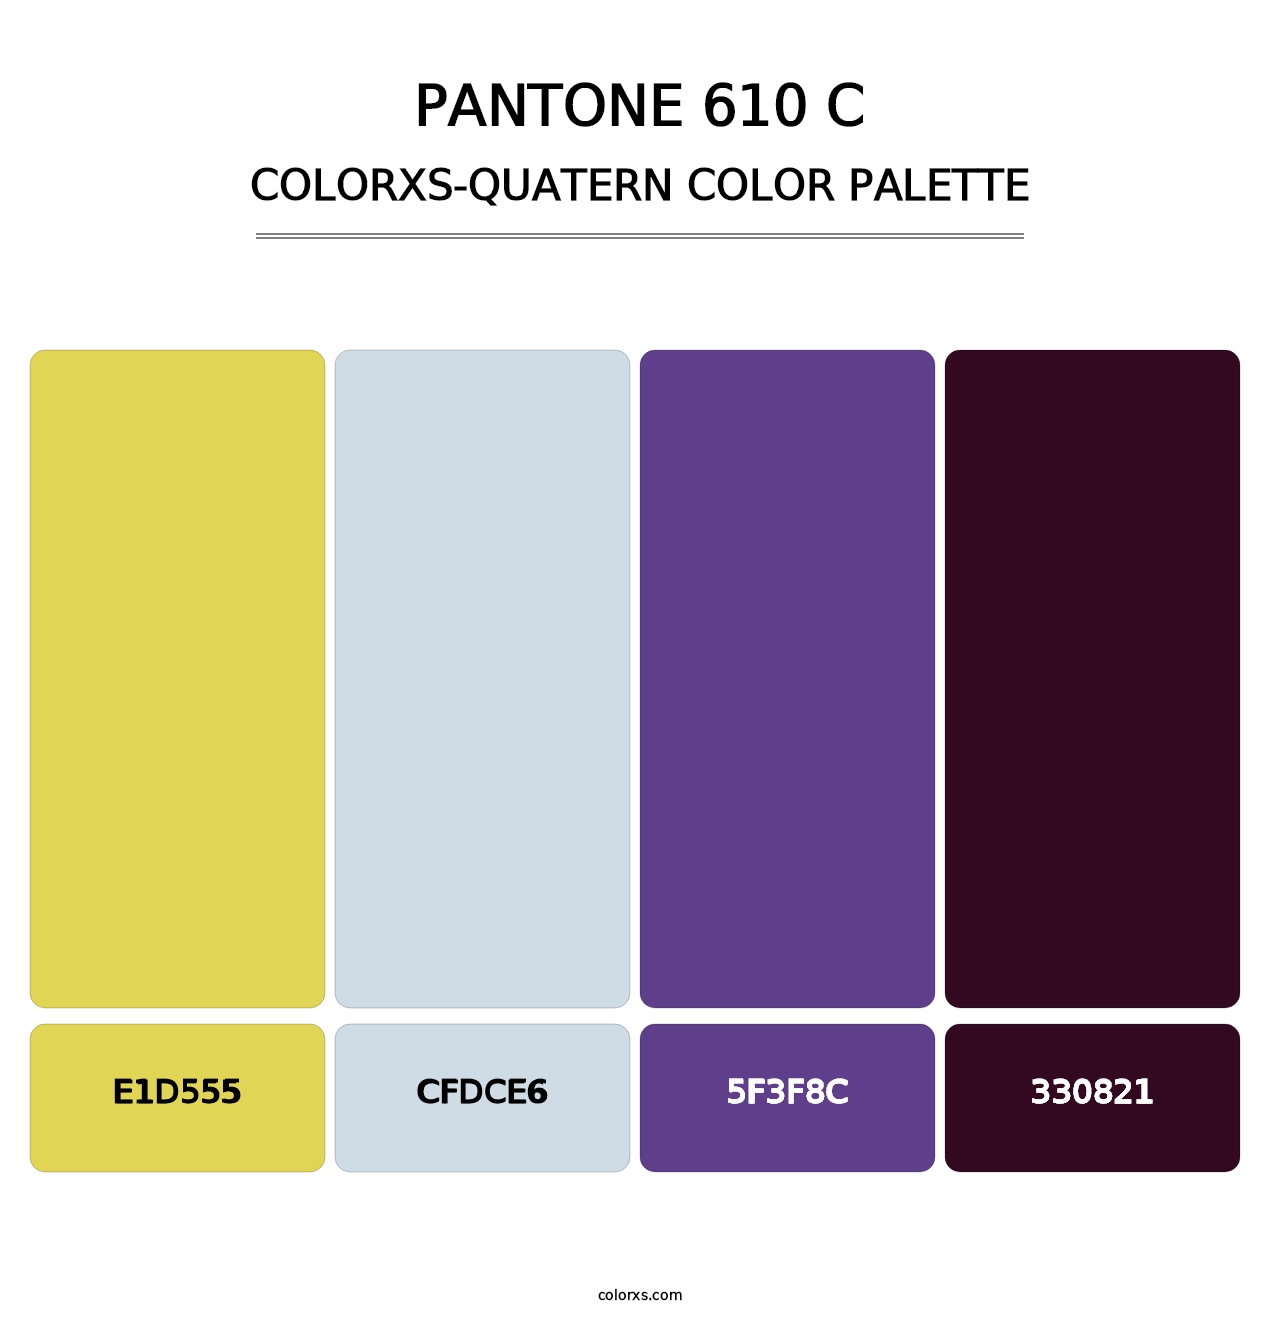 PANTONE 610 C - Colorxs Quatern Palette